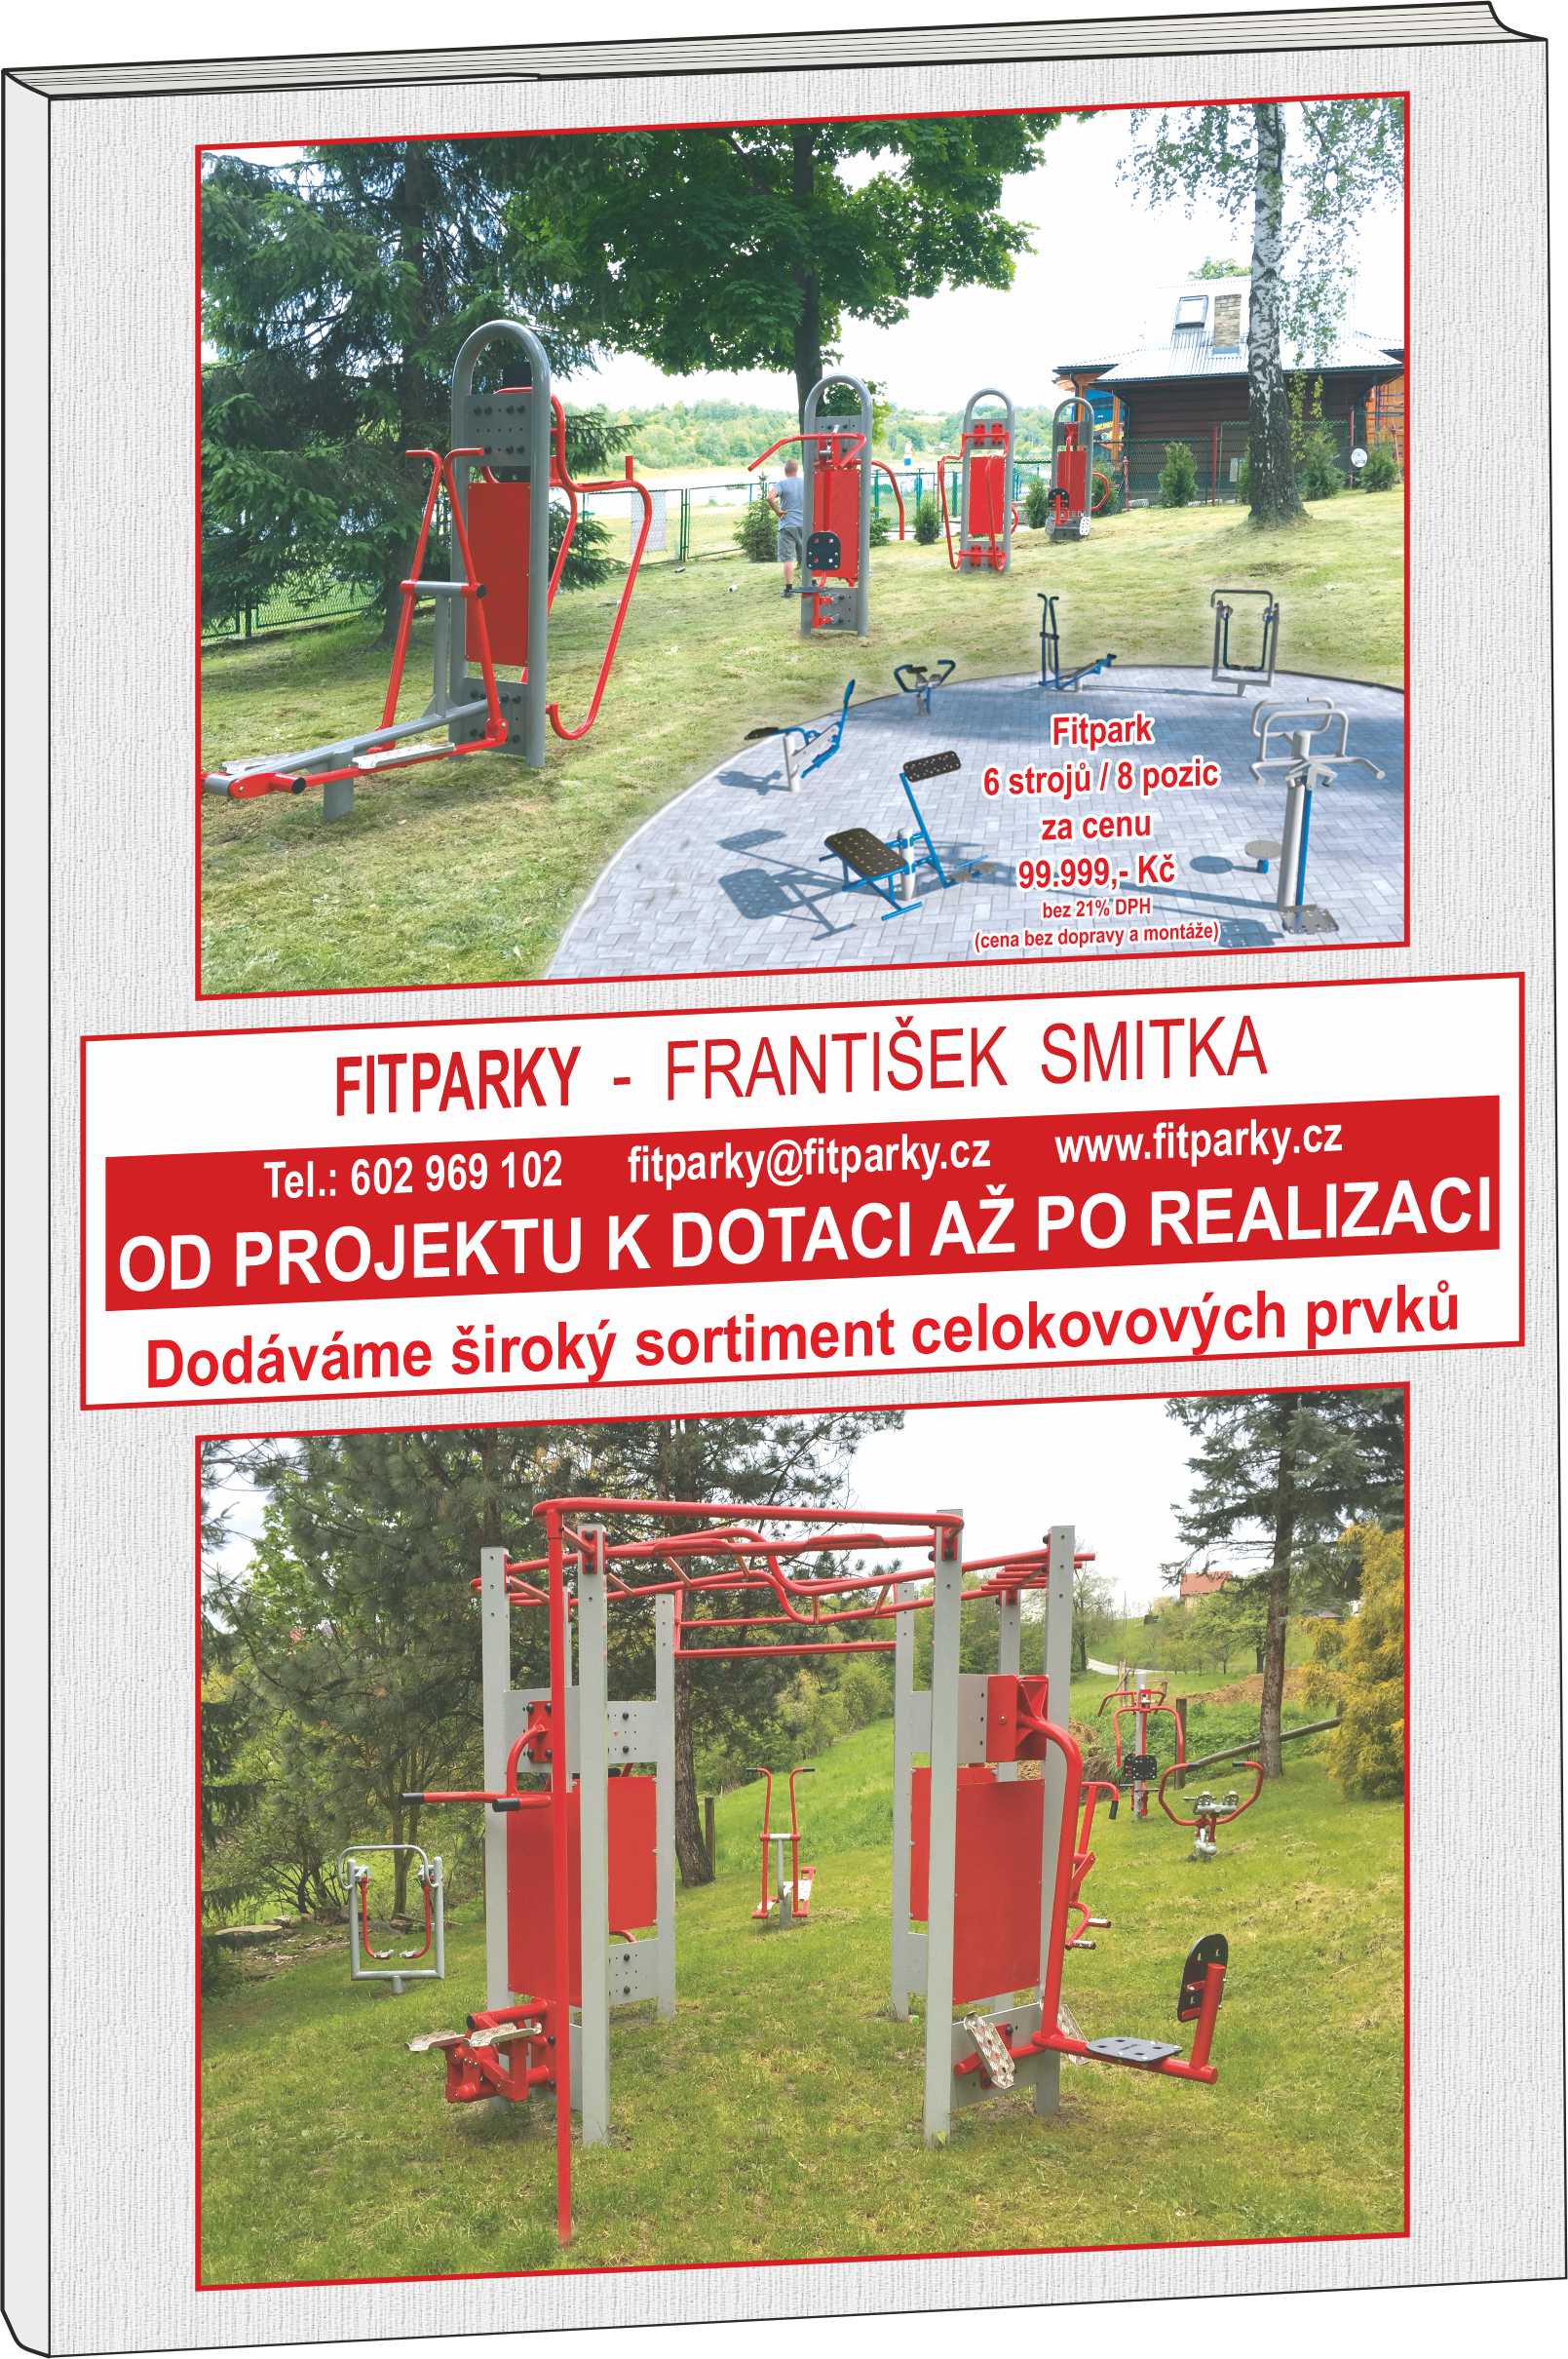 Dřevovýroba František Smitka - dětská hřiště, workout, fitness prvky